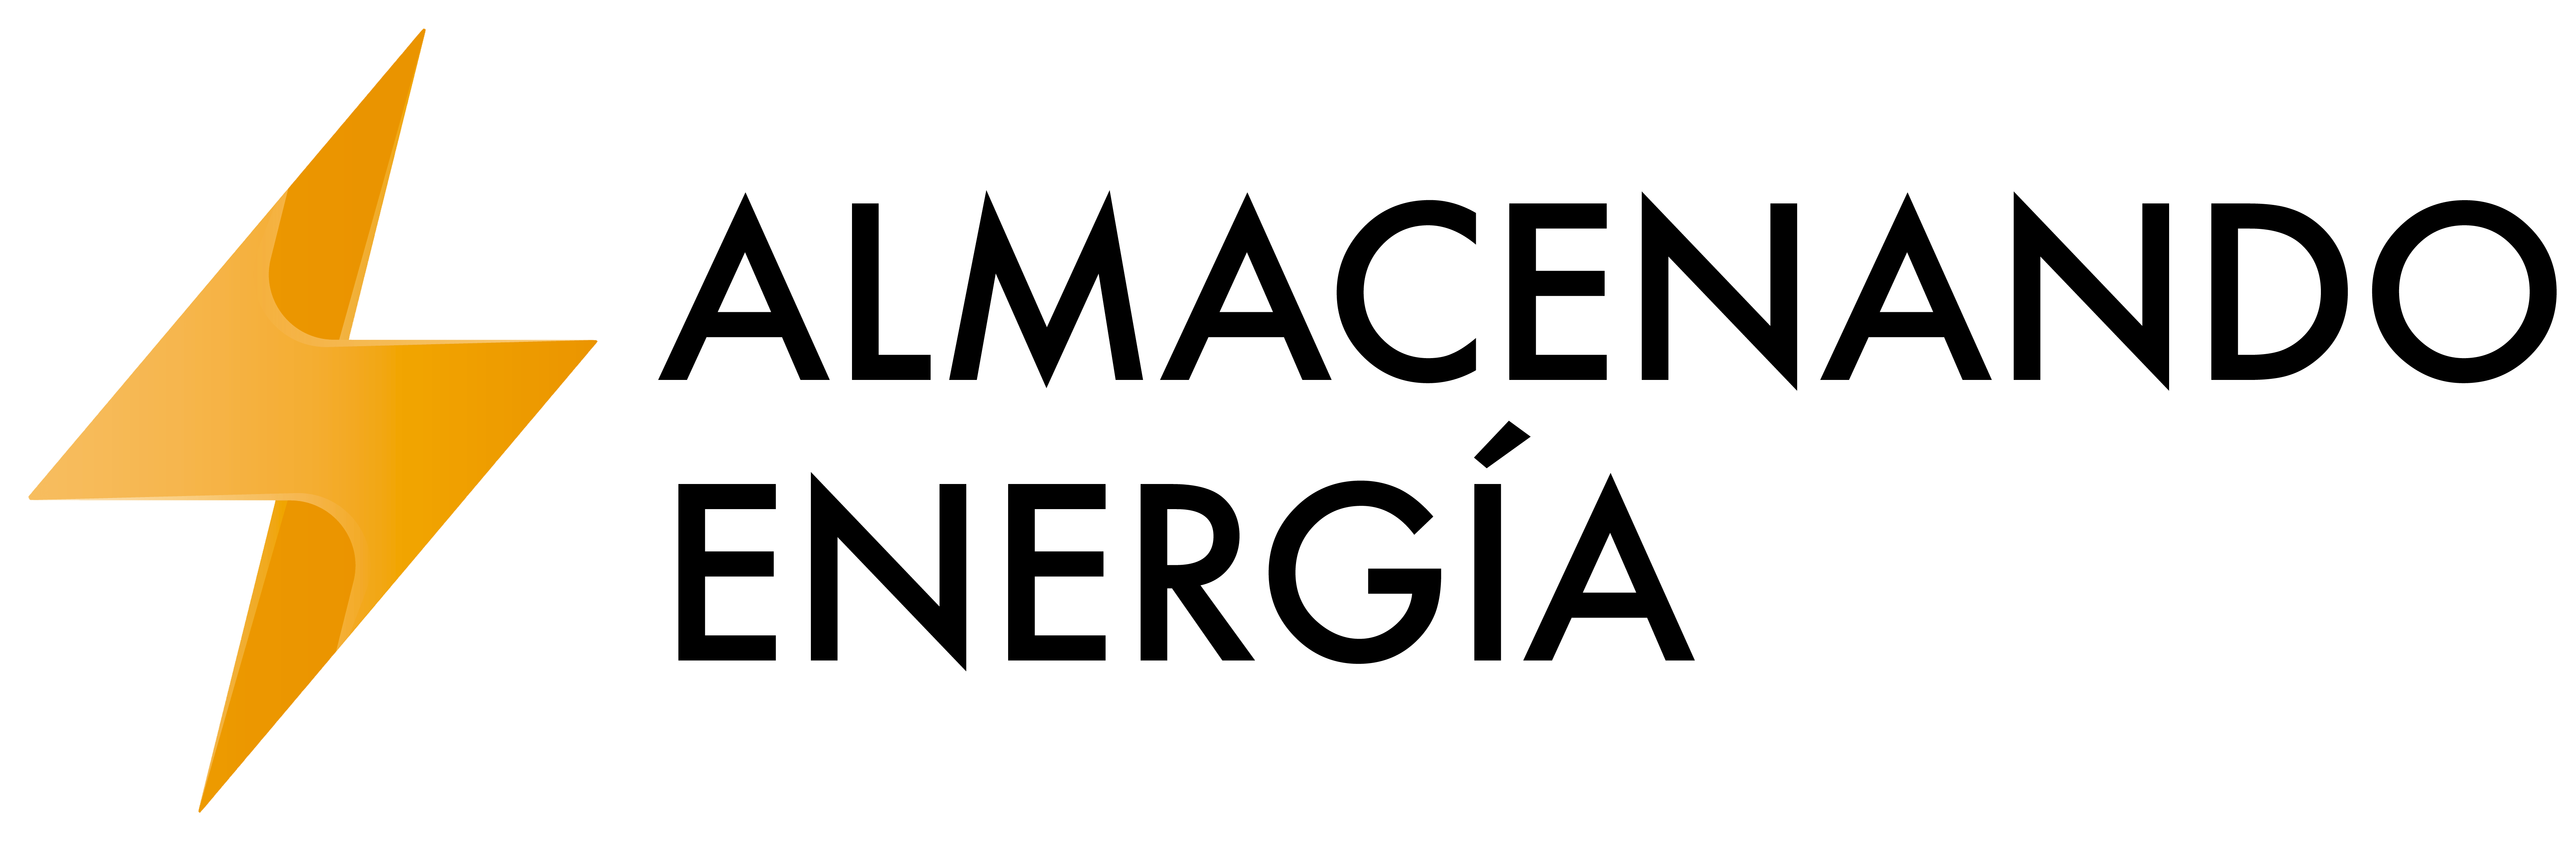 Logotipo de Almacenando Energía, el blog sobre generadores portátiles de energía. Un rayo naranja con la palabra Almacenando Energía